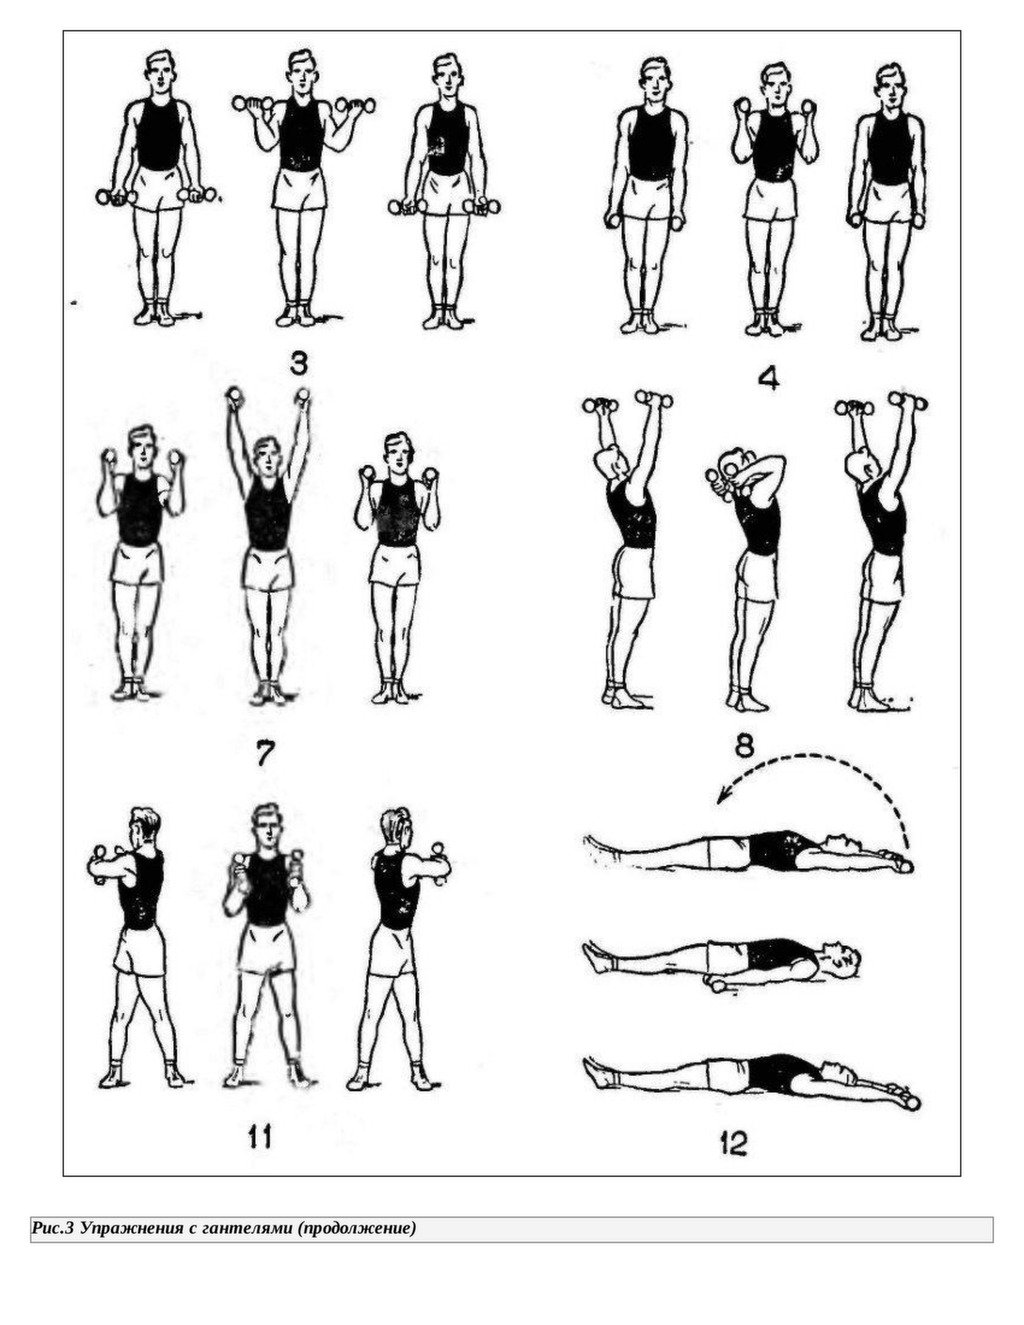 Зарядка для рук для похудения. Комплекс упражнений с гантельками. Комплекс упражнений с гантелями (10-12 упражнений). Комплекс упражнений для рук с гантелями. Упражнения с гантельками для женщин.